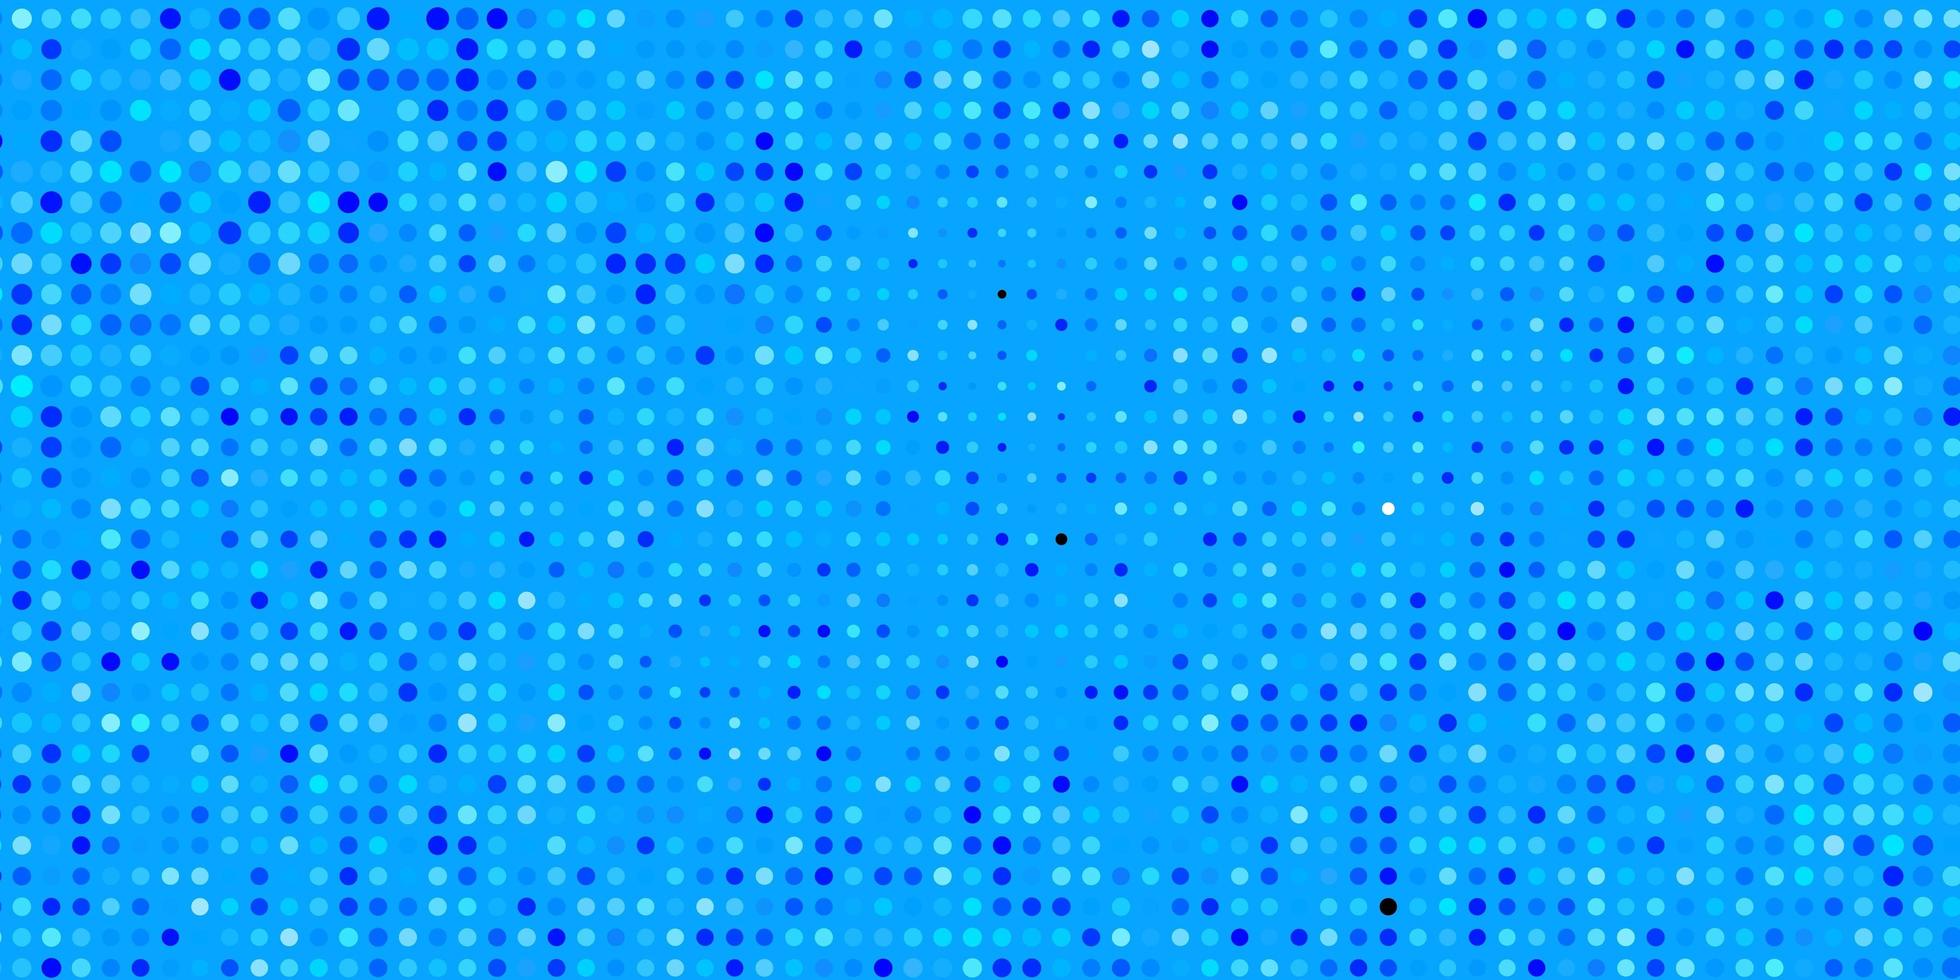 sfondo vettoriale azzurro con puntini.